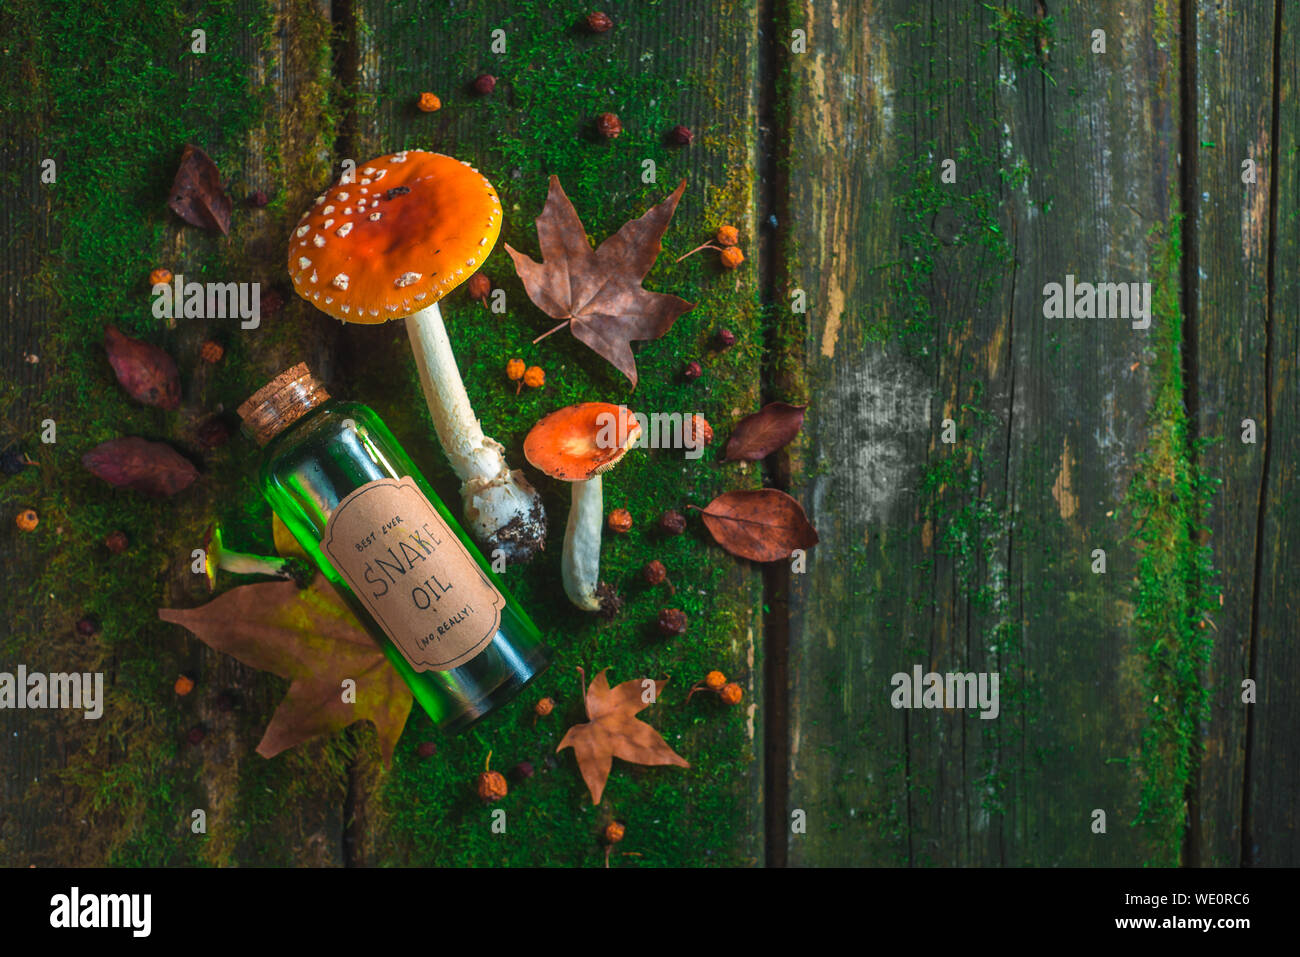 Rote giftige Pilze auf einem Holztisch mit einer Flasche Snake Oil, Moos und Blättern. Fake madicine Konzept mit Kopie Raum Stockfoto